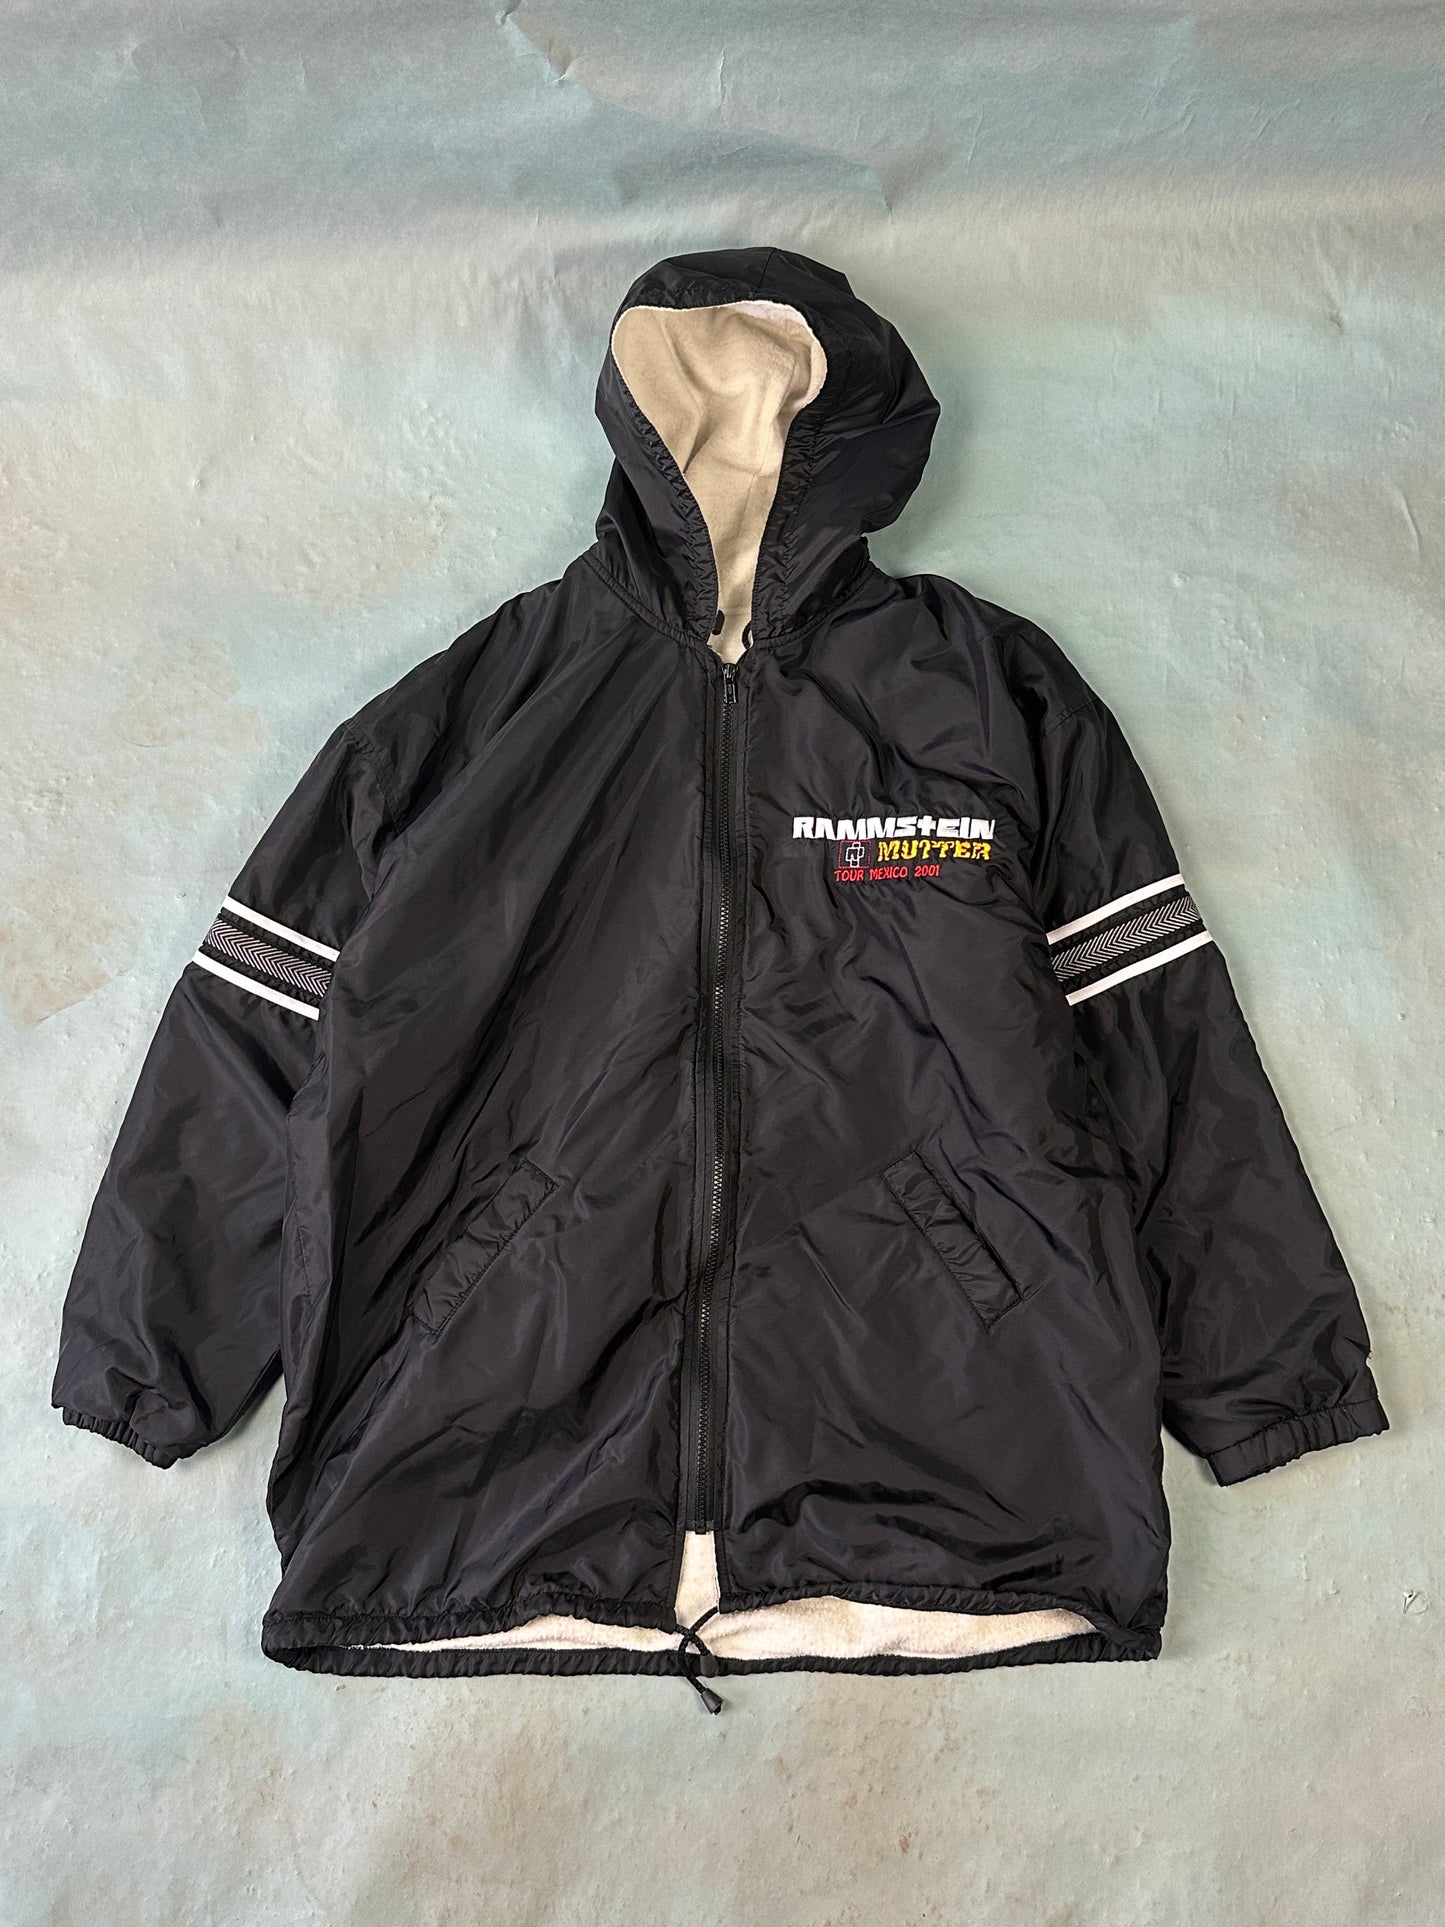 Rammstein 2001 Mexico Tour Vintage Jacket - XL